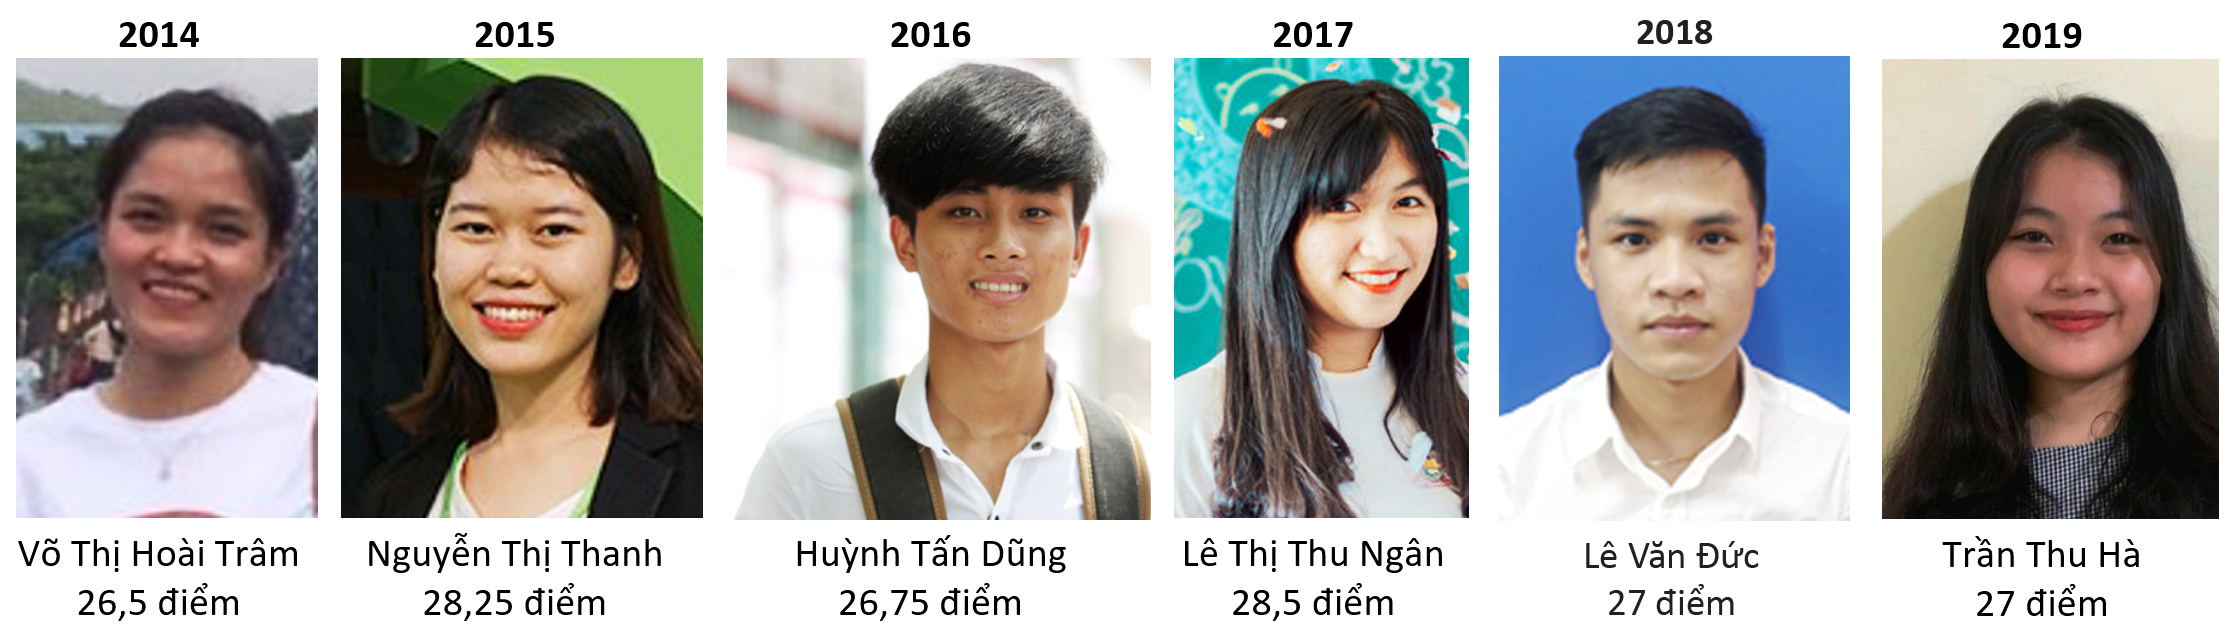 Các thủ khoa đầu vào của ĐH Duy Tân từ năm 2014 - 2019